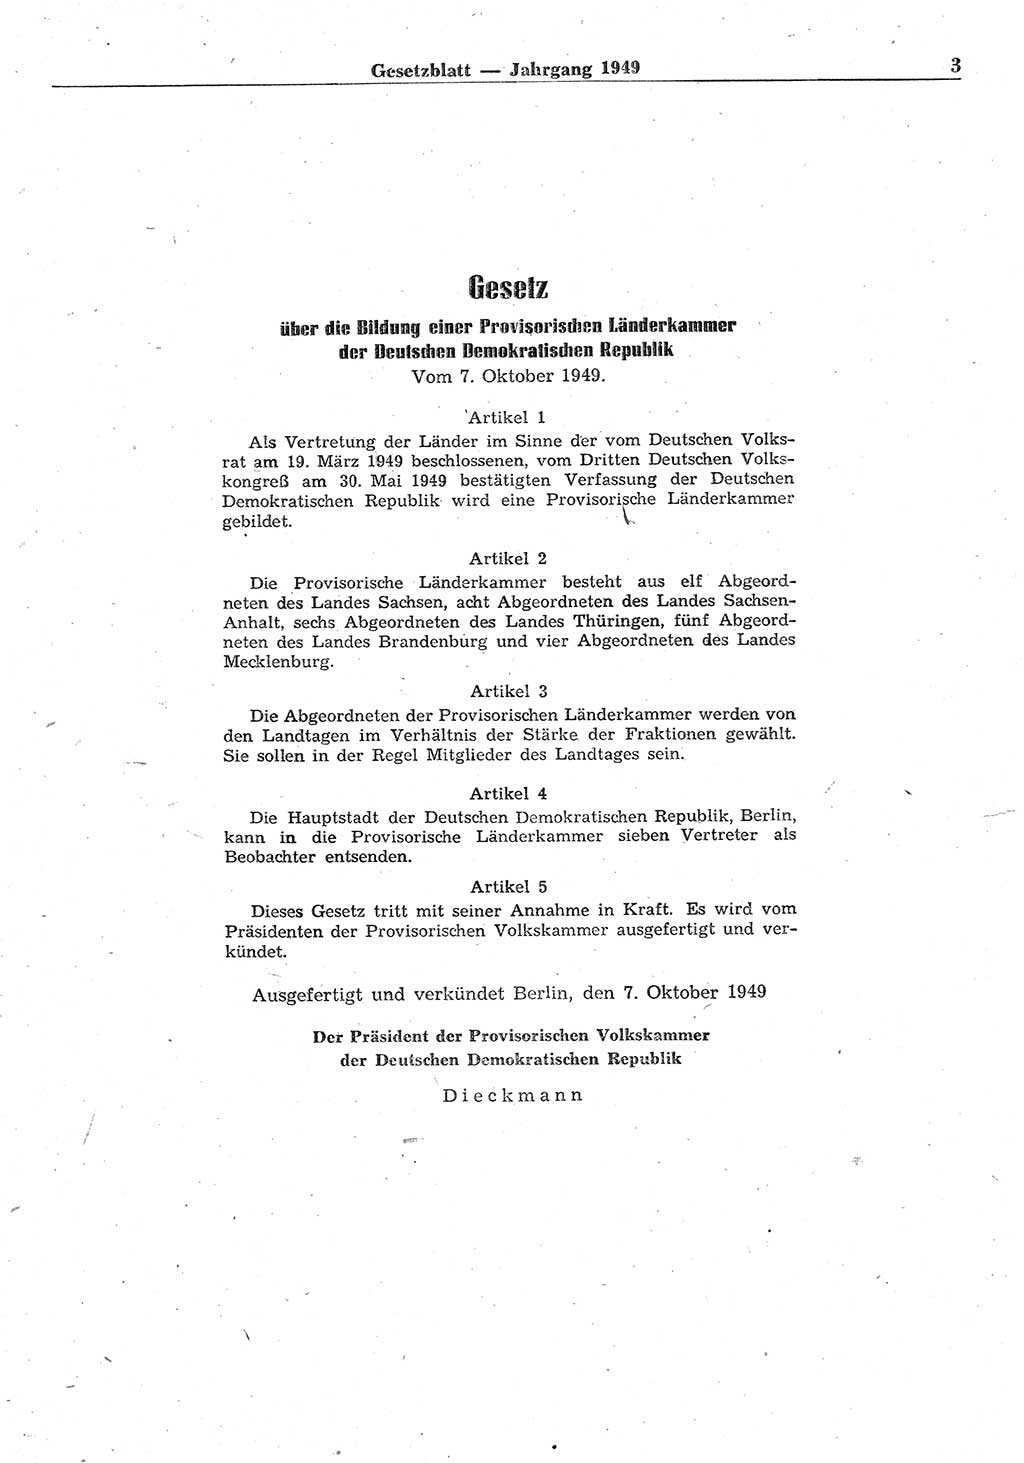 Gesetzblatt (GBl.) der Deutschen Demokratischen Republik (DDR) 1949, Seite 3 (GBl. DDR 1949, S. 3)